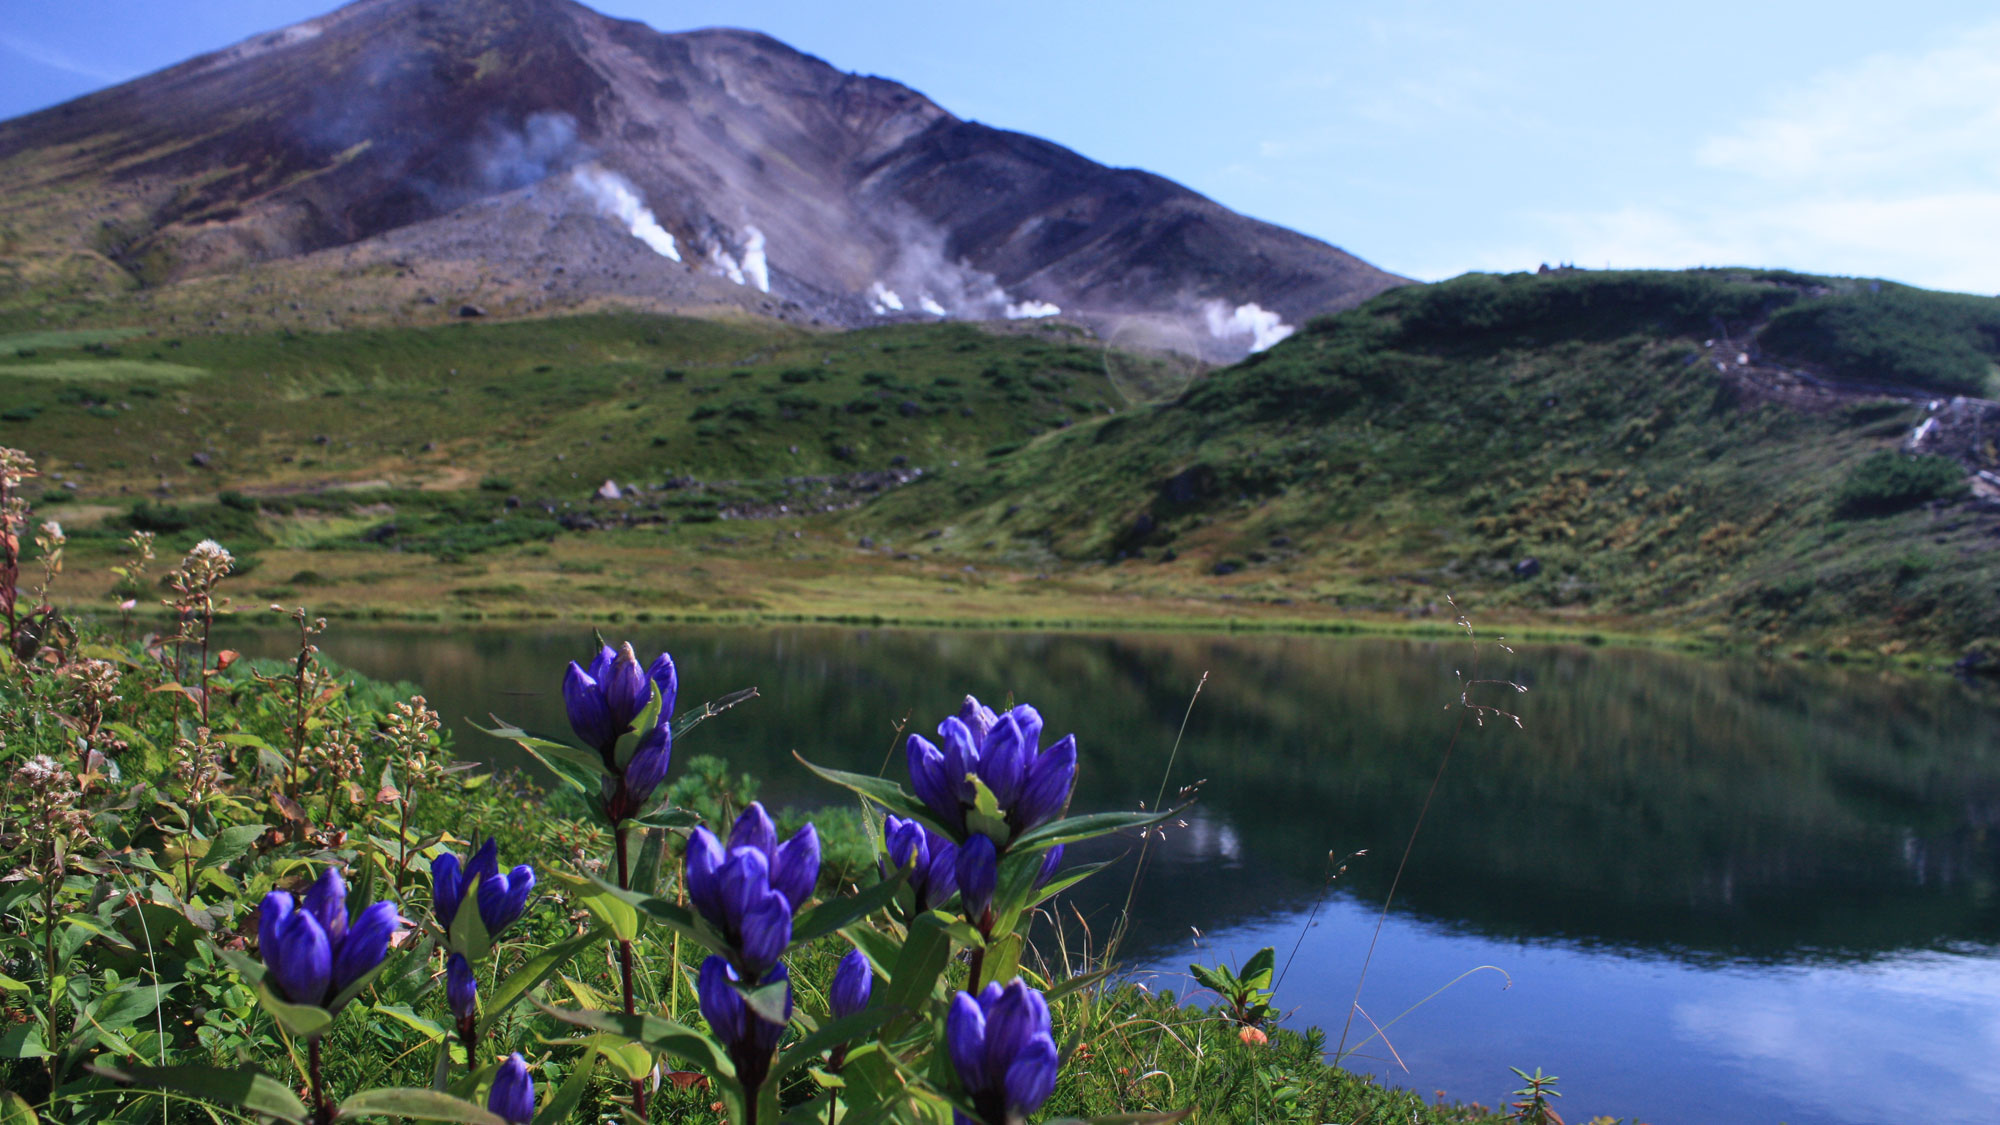 夏は大雪山固有の高山植物が数多く咲く、素晴らしい時期